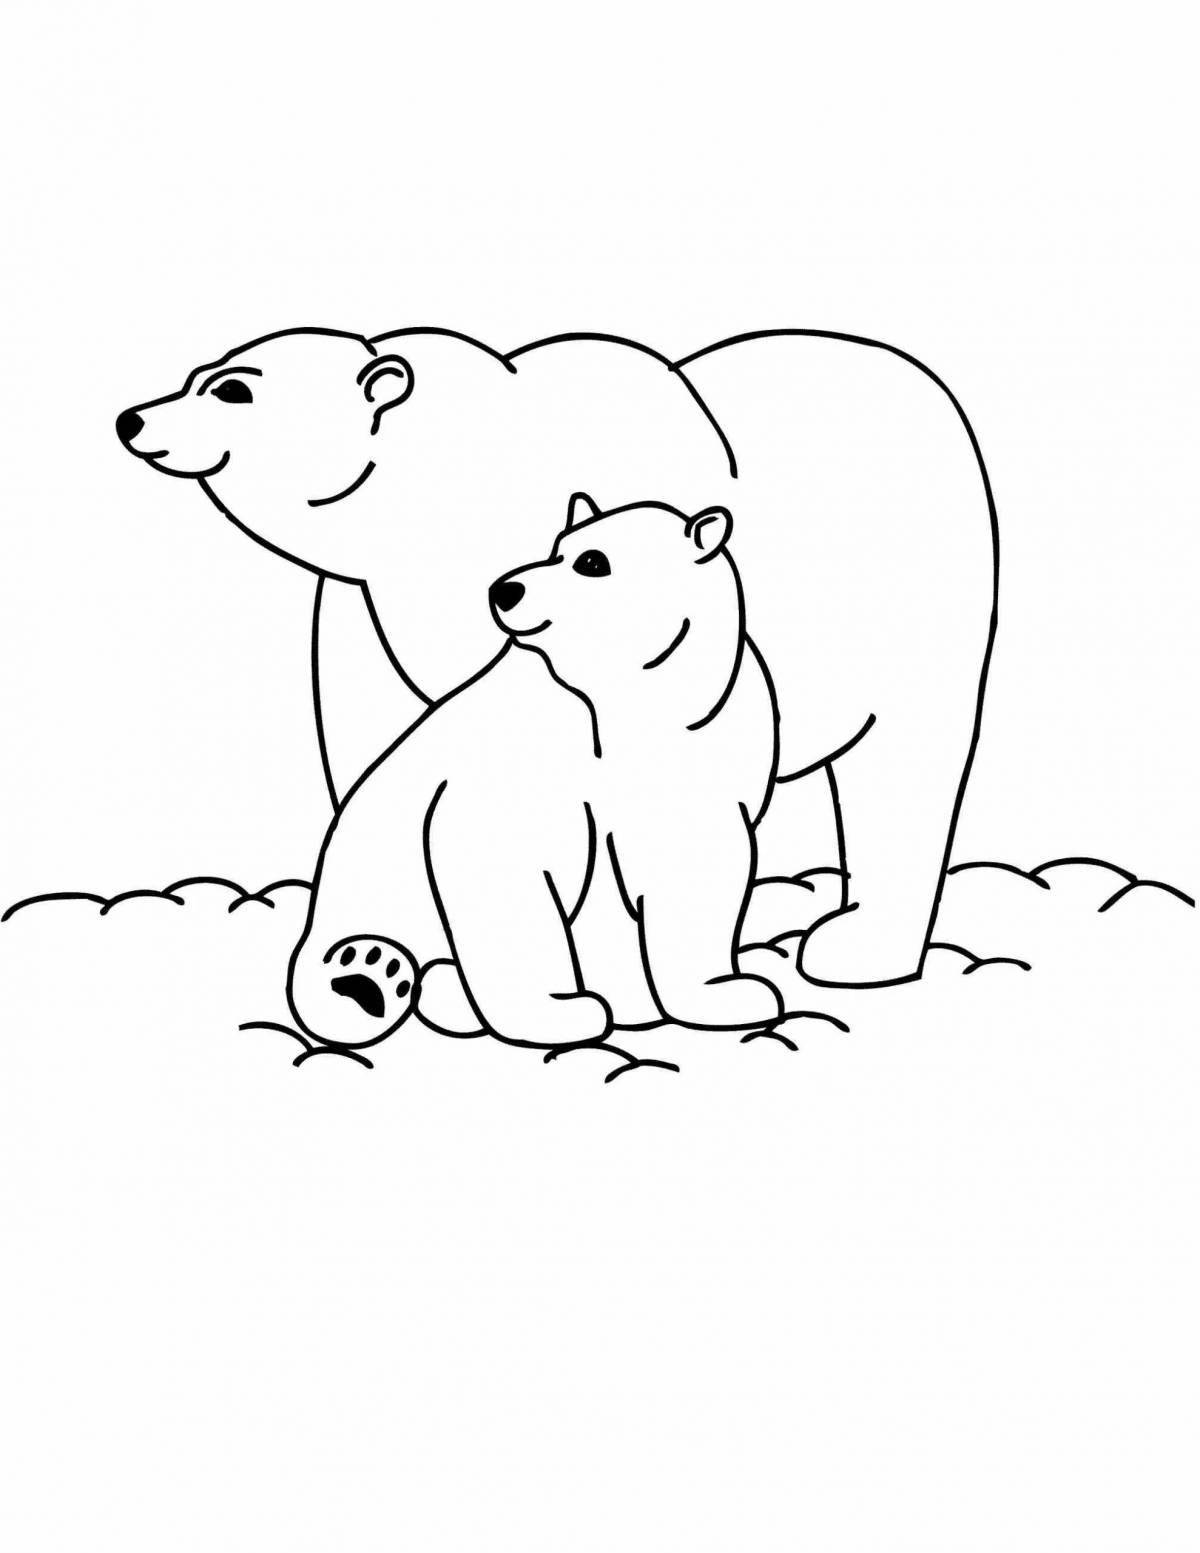 Adorable polar bear with a cub coloring book